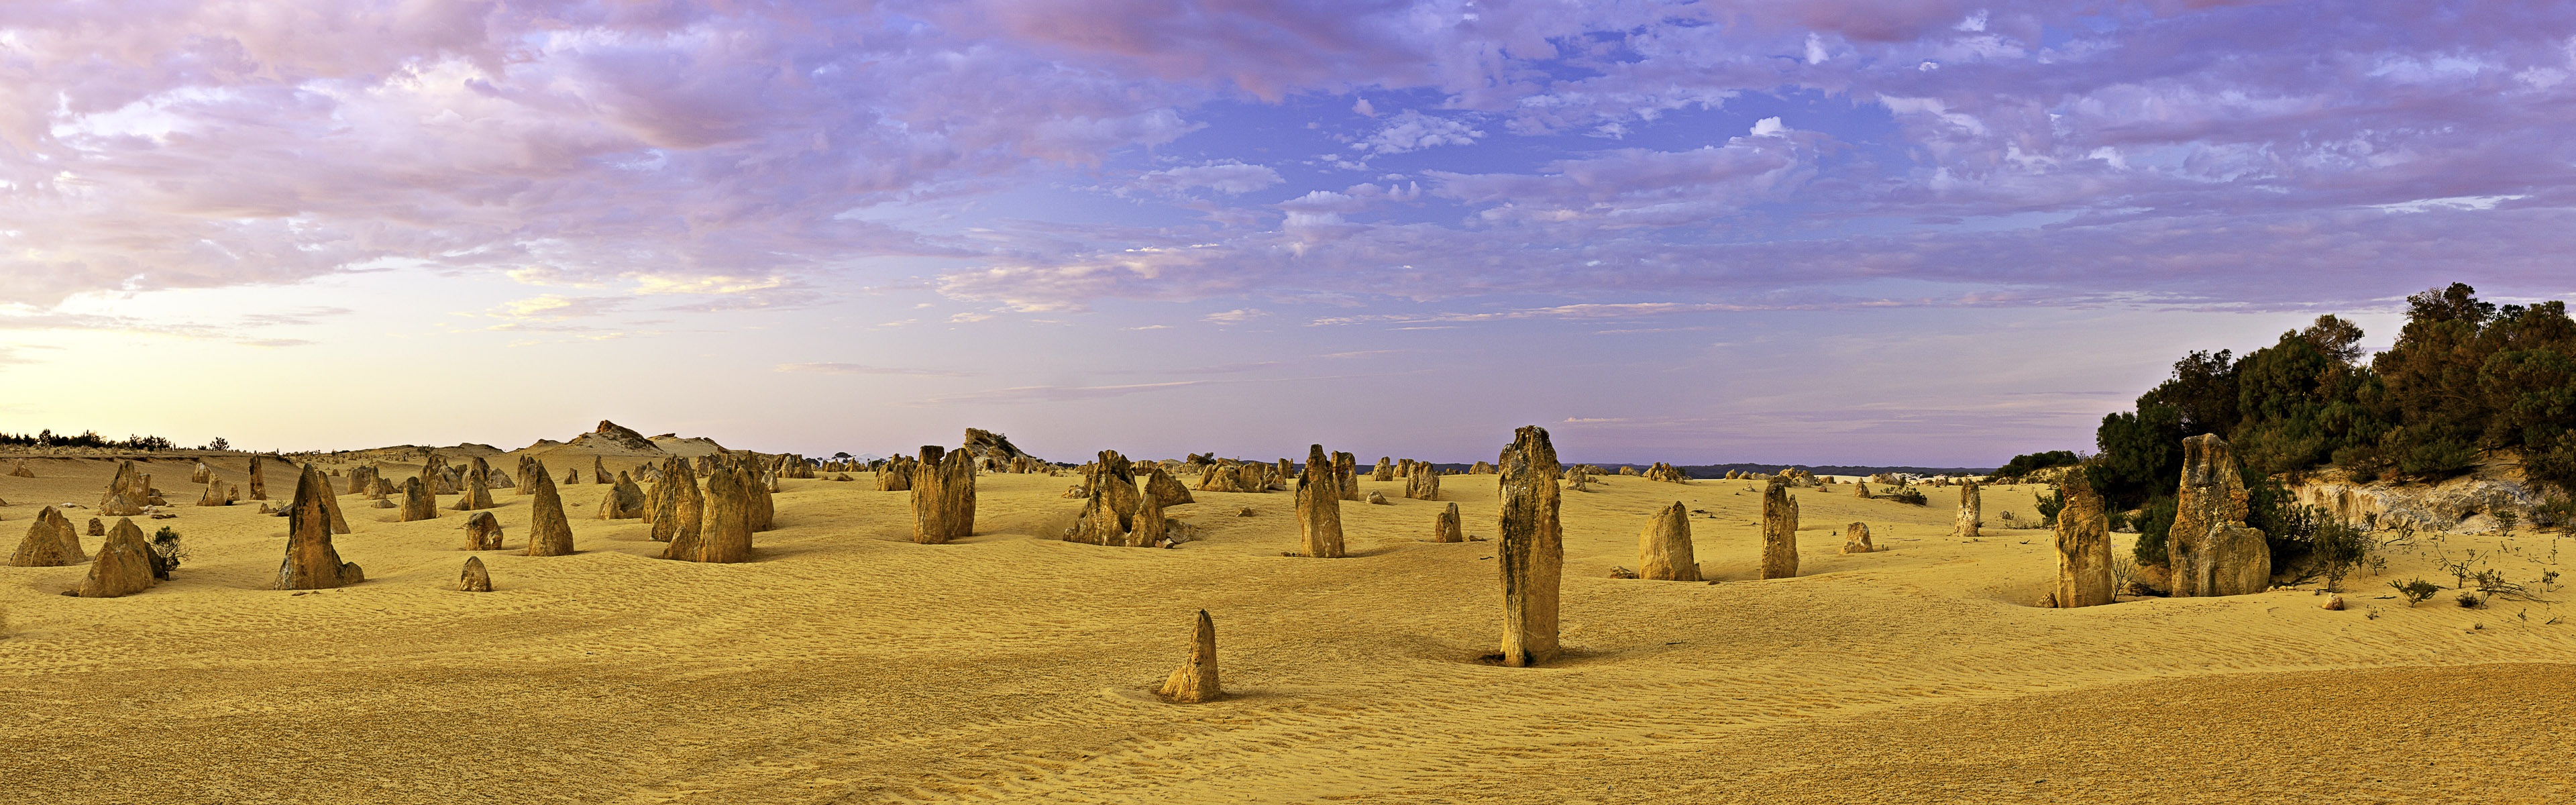 暑くて乾燥した砂漠、Windows 8のパノラマワイドスクリーンの壁紙 #8 - 3840x1200